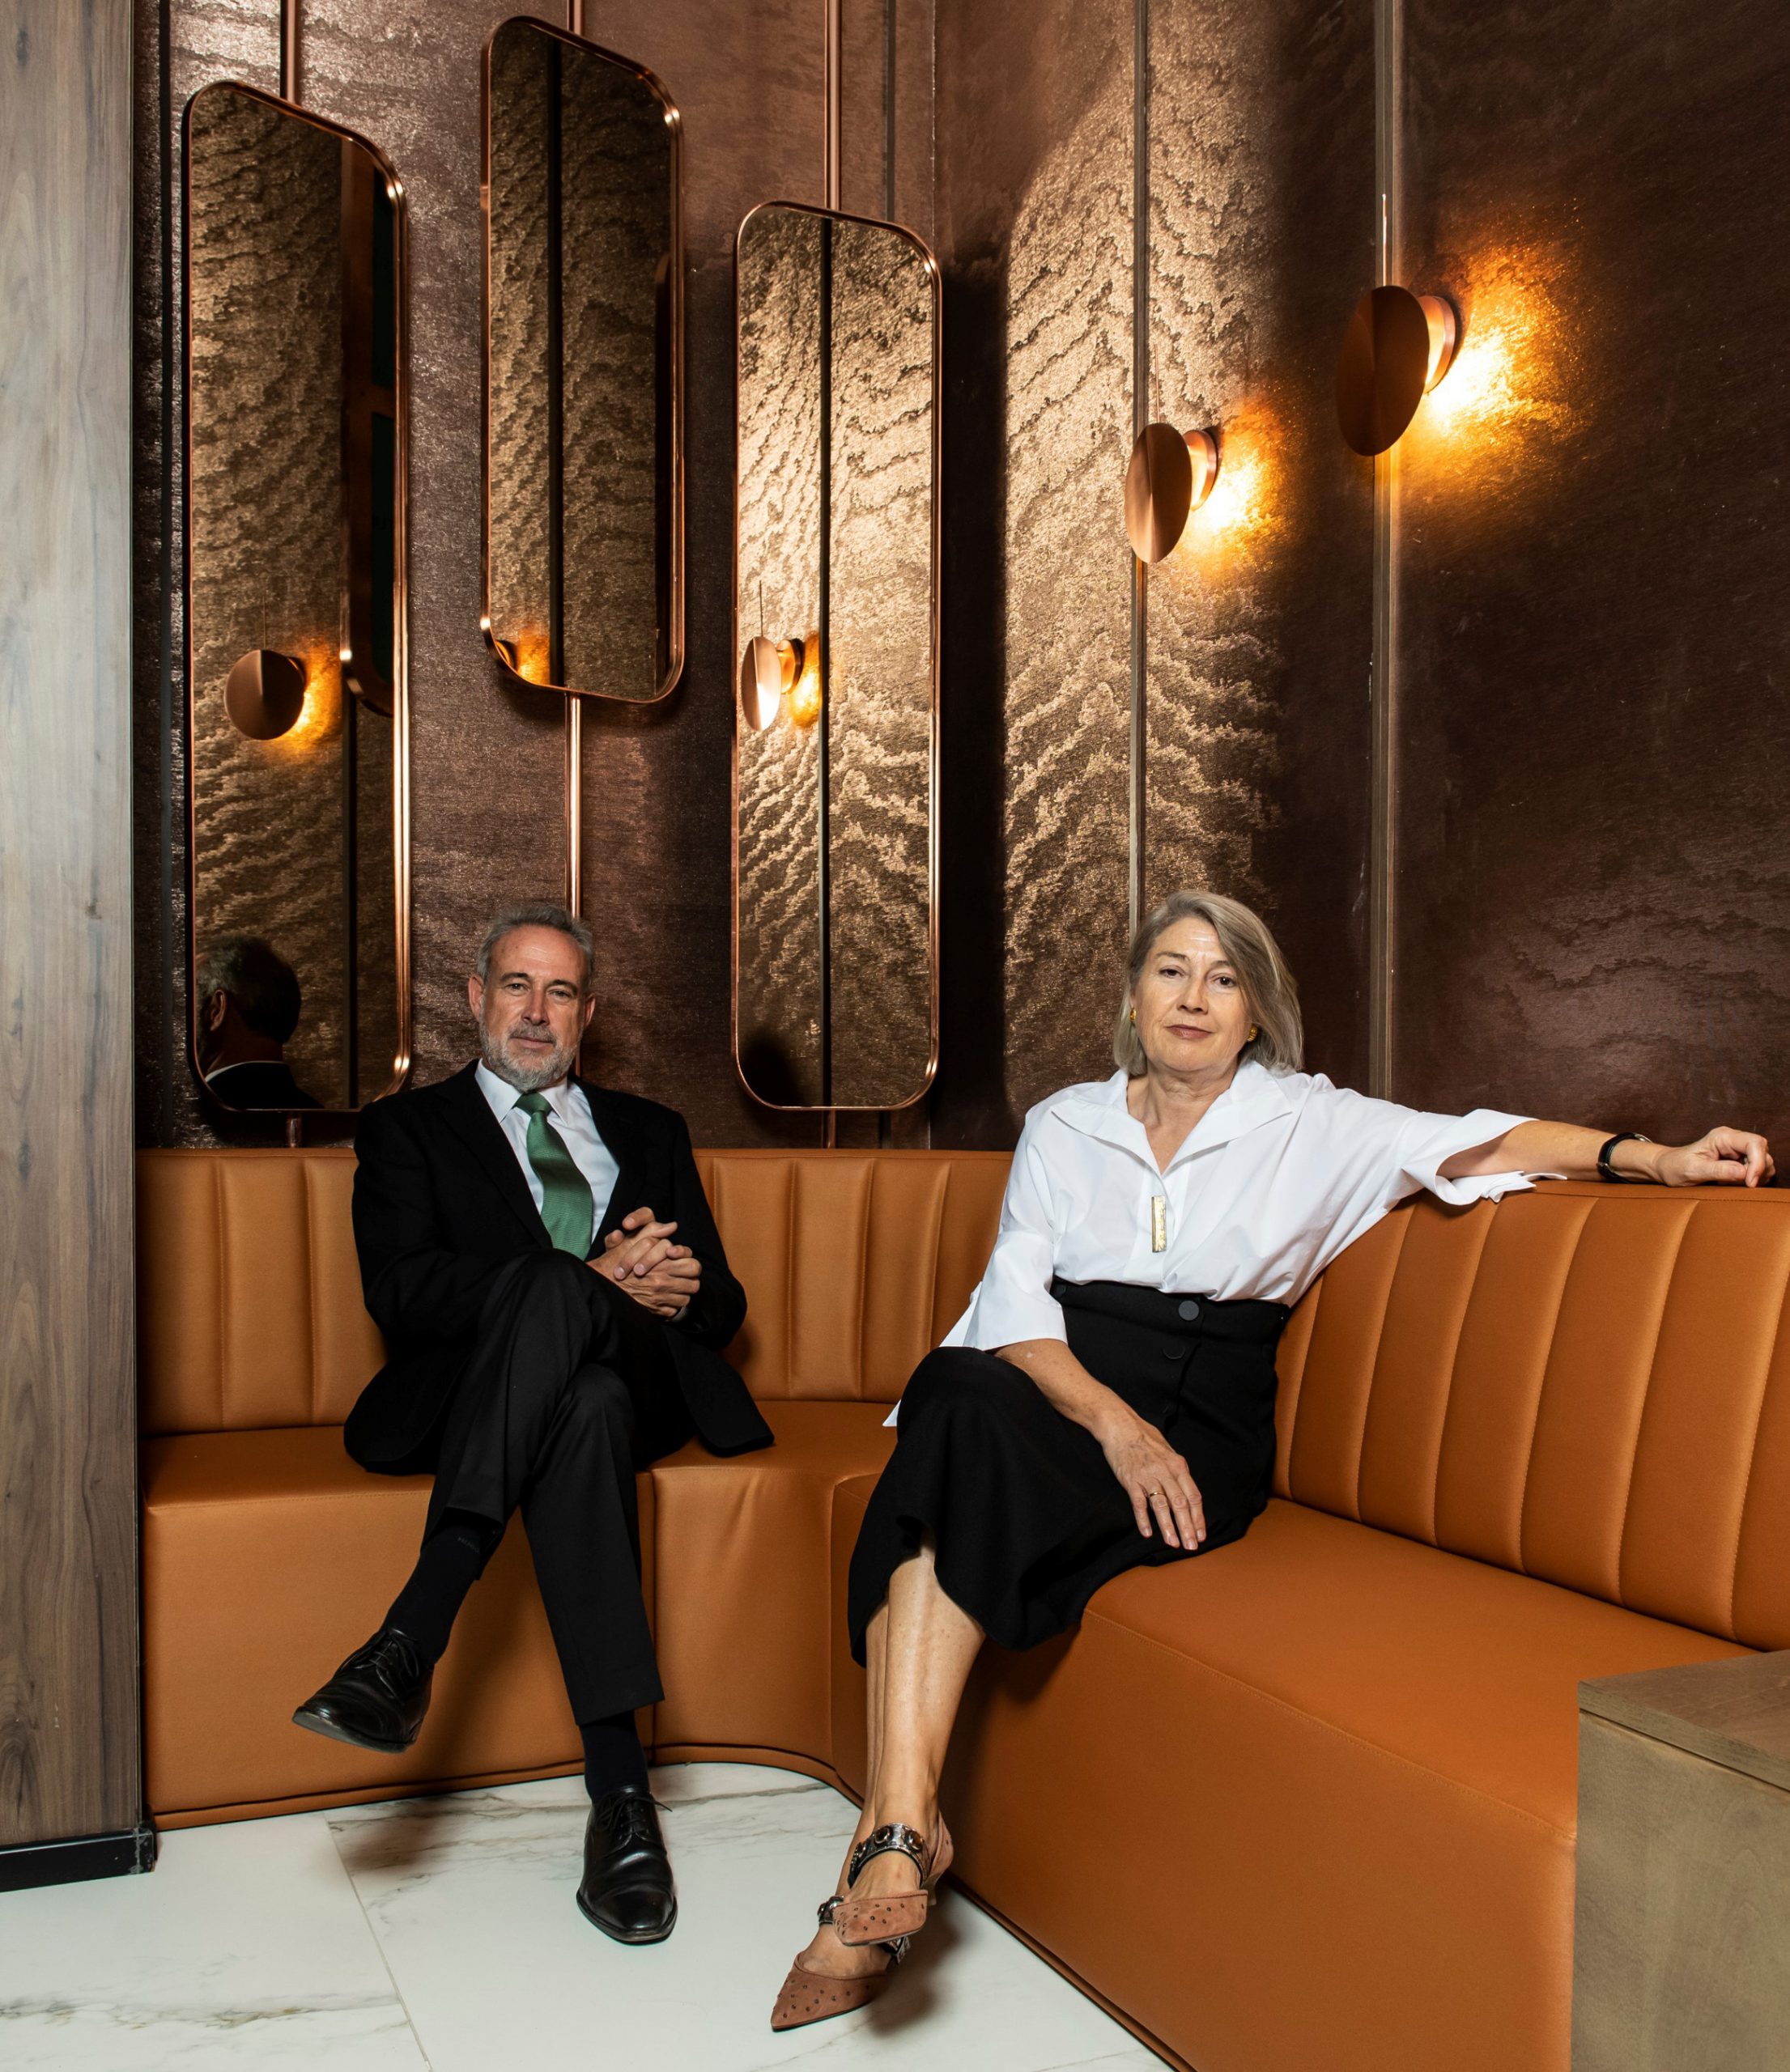 Carmen und Luis Riu, Eigentümer von RIU Hotels & Resorts, bei der Eröffnung des Riu Plaza España